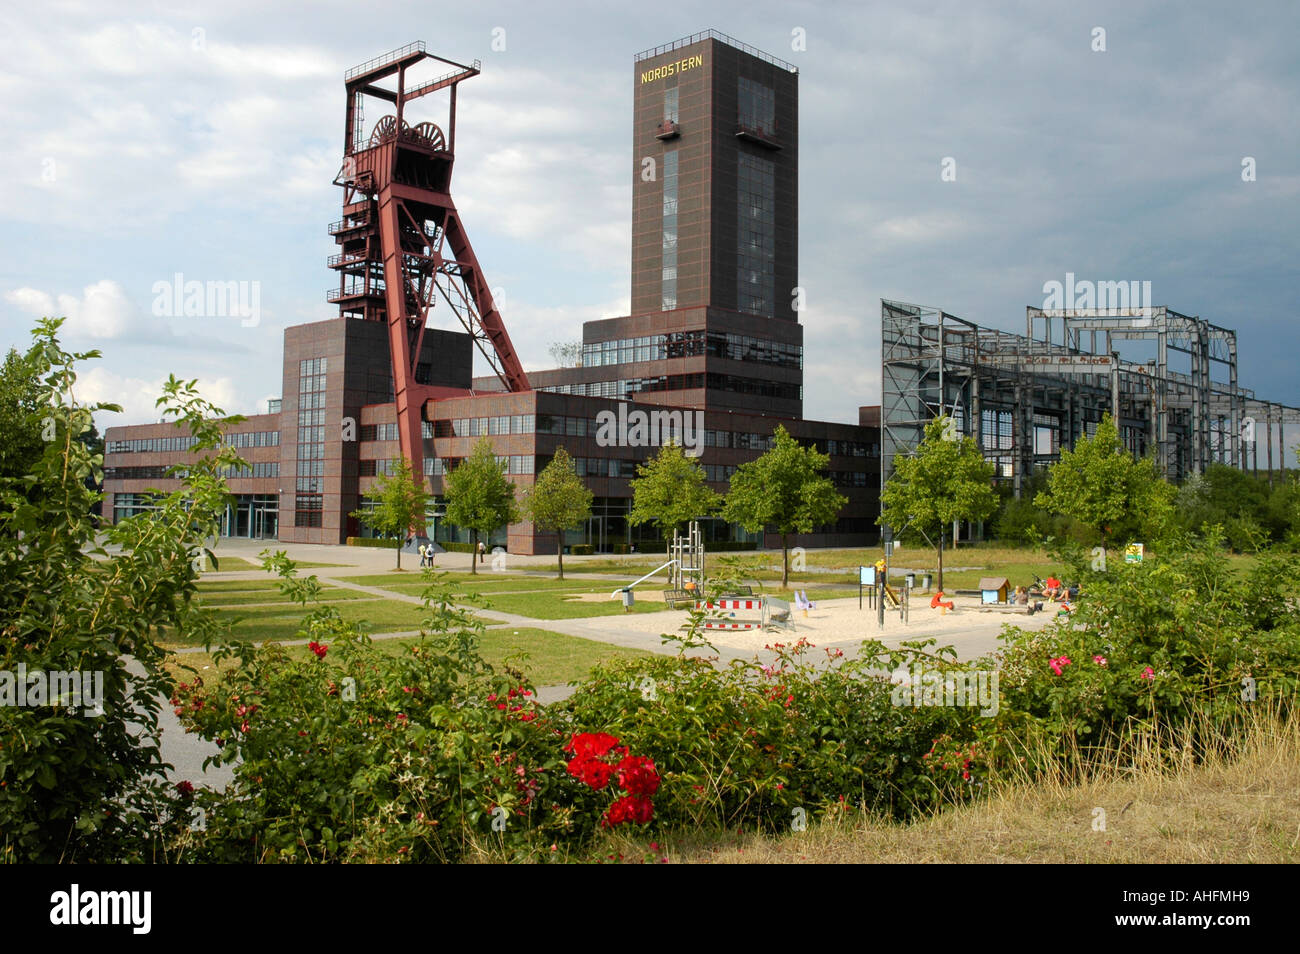 Nordsternpark, Straße der Industrie Kultur, Gelsenkirchen, Ruhr Gebiet, NRW, Nordrhein-Westfalen, Deutschland Stockfoto